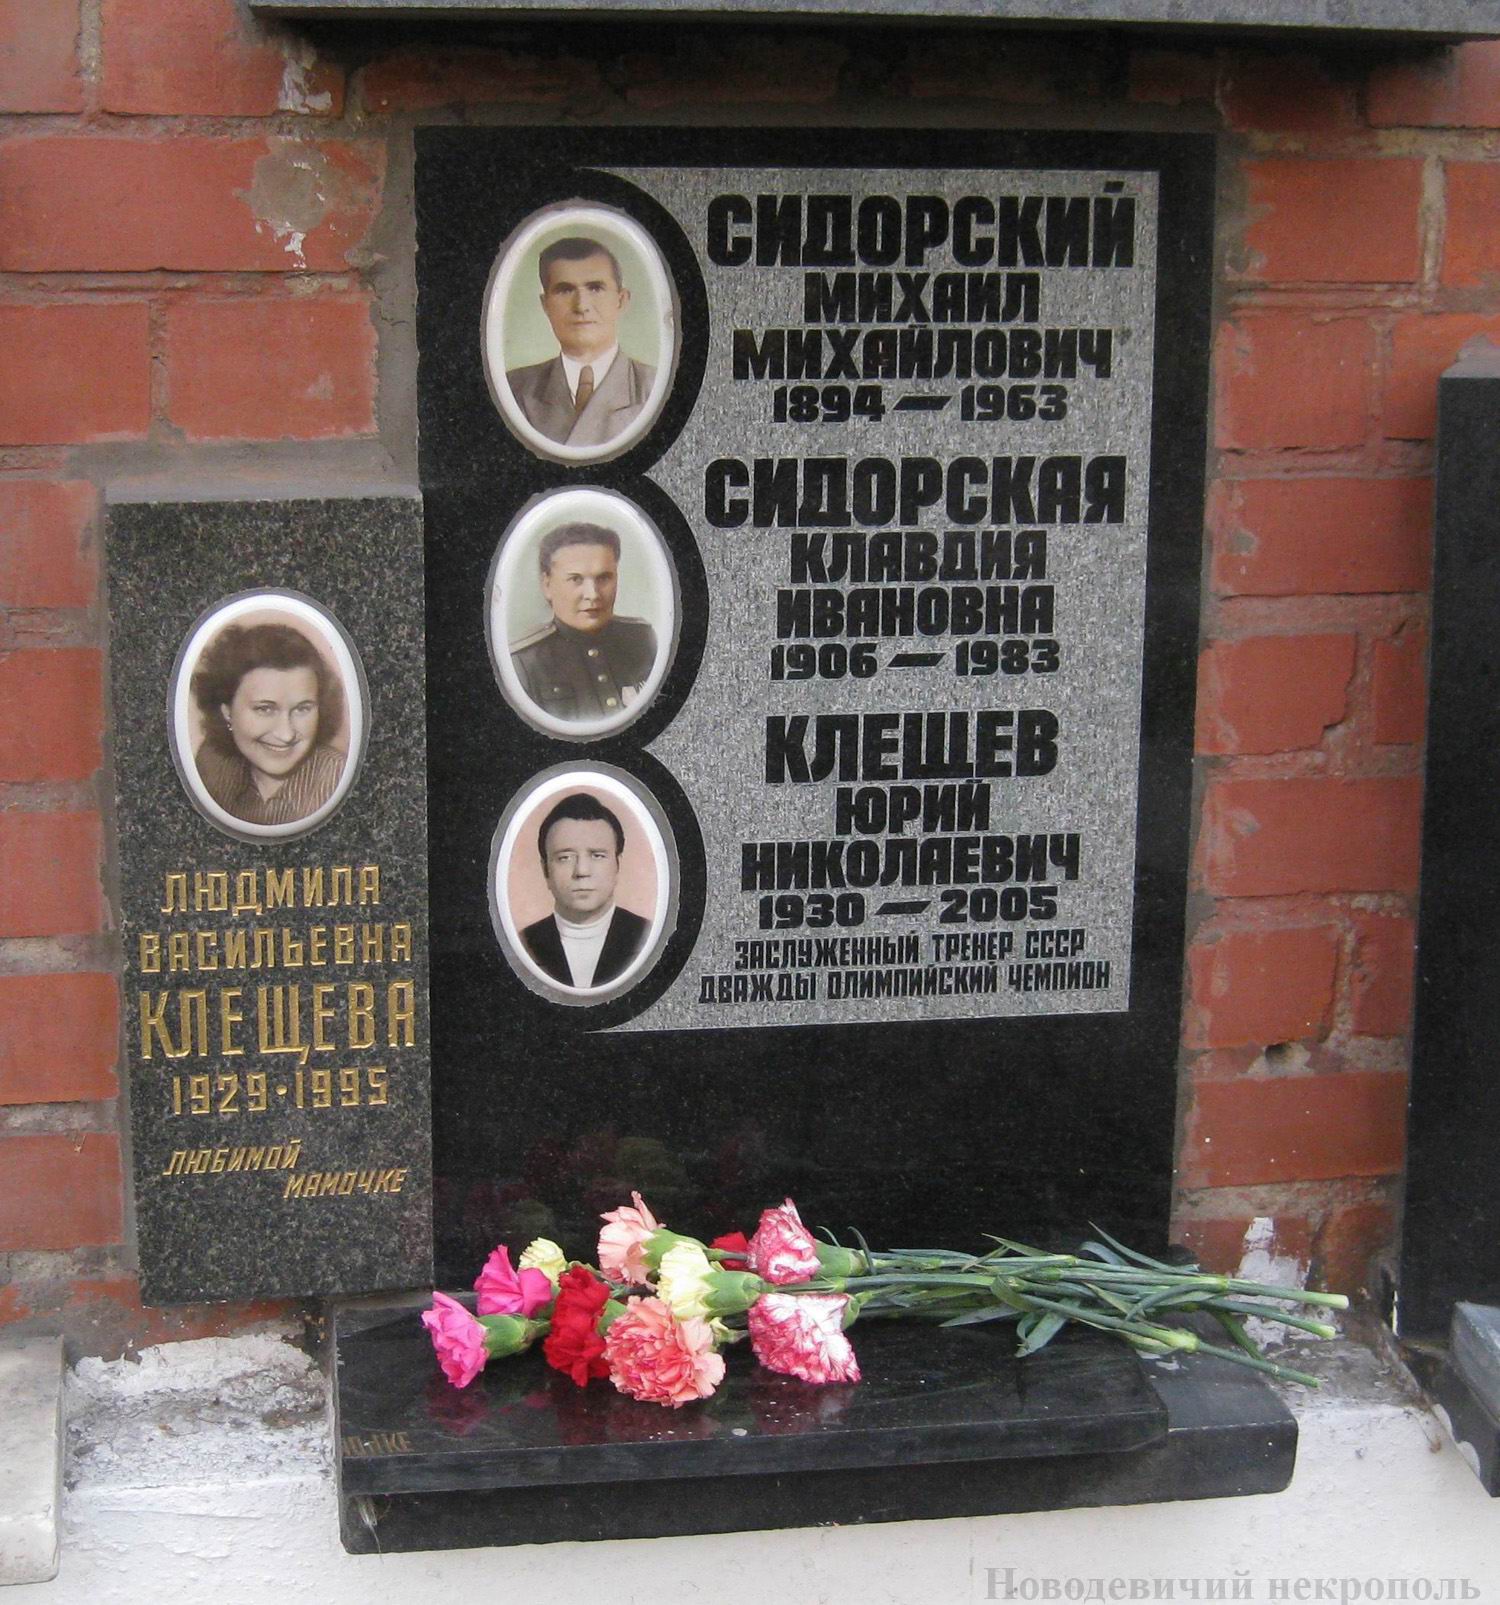 Плита на нише Клещёва Ю.Н. (1930-2005), на Новодевичьем кладбище (колумбарий [125]-13-4).